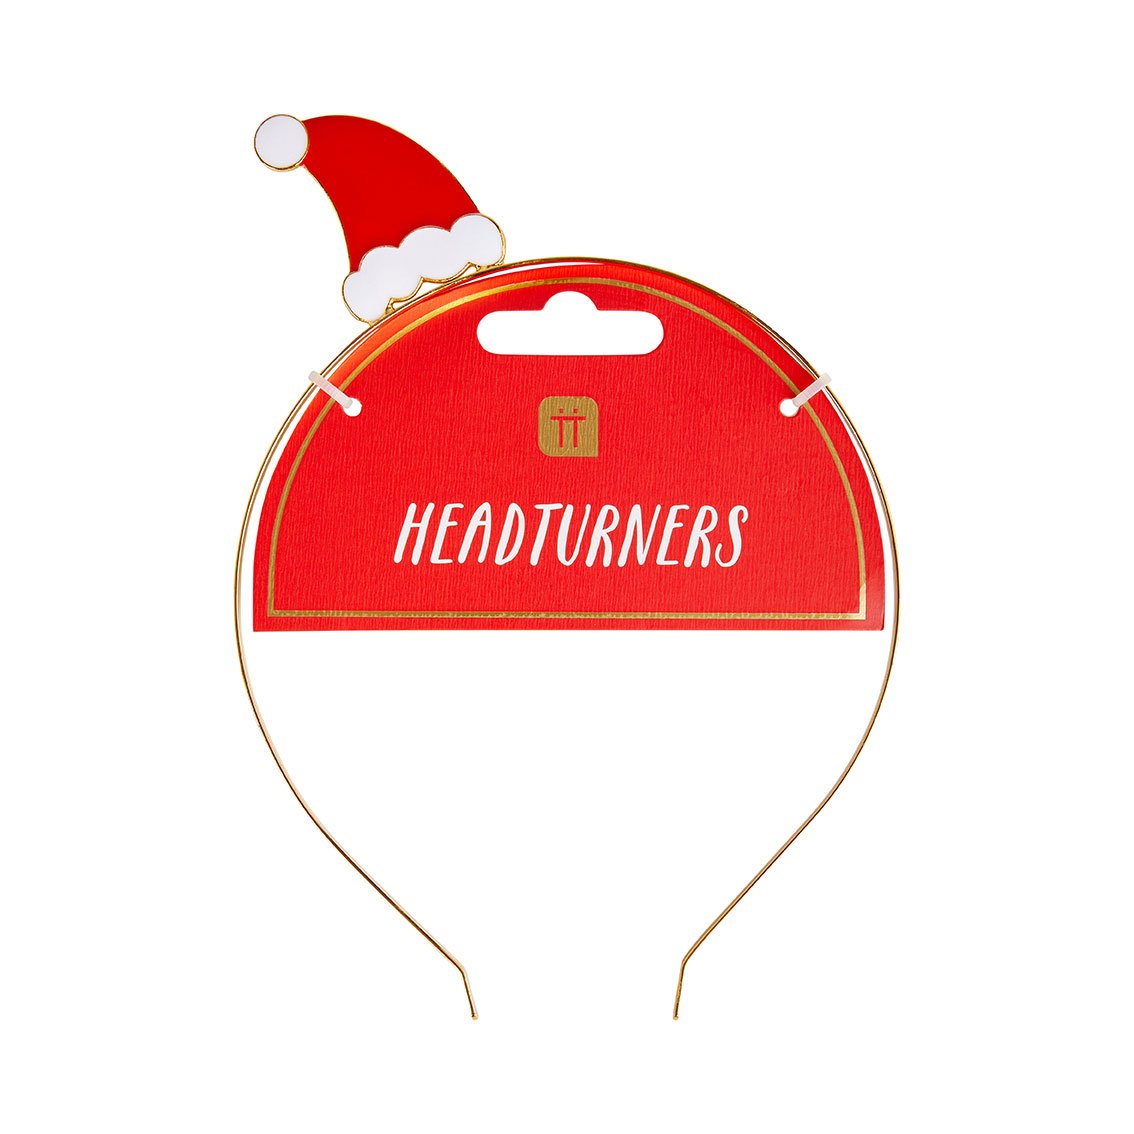 Santa Hat Headband